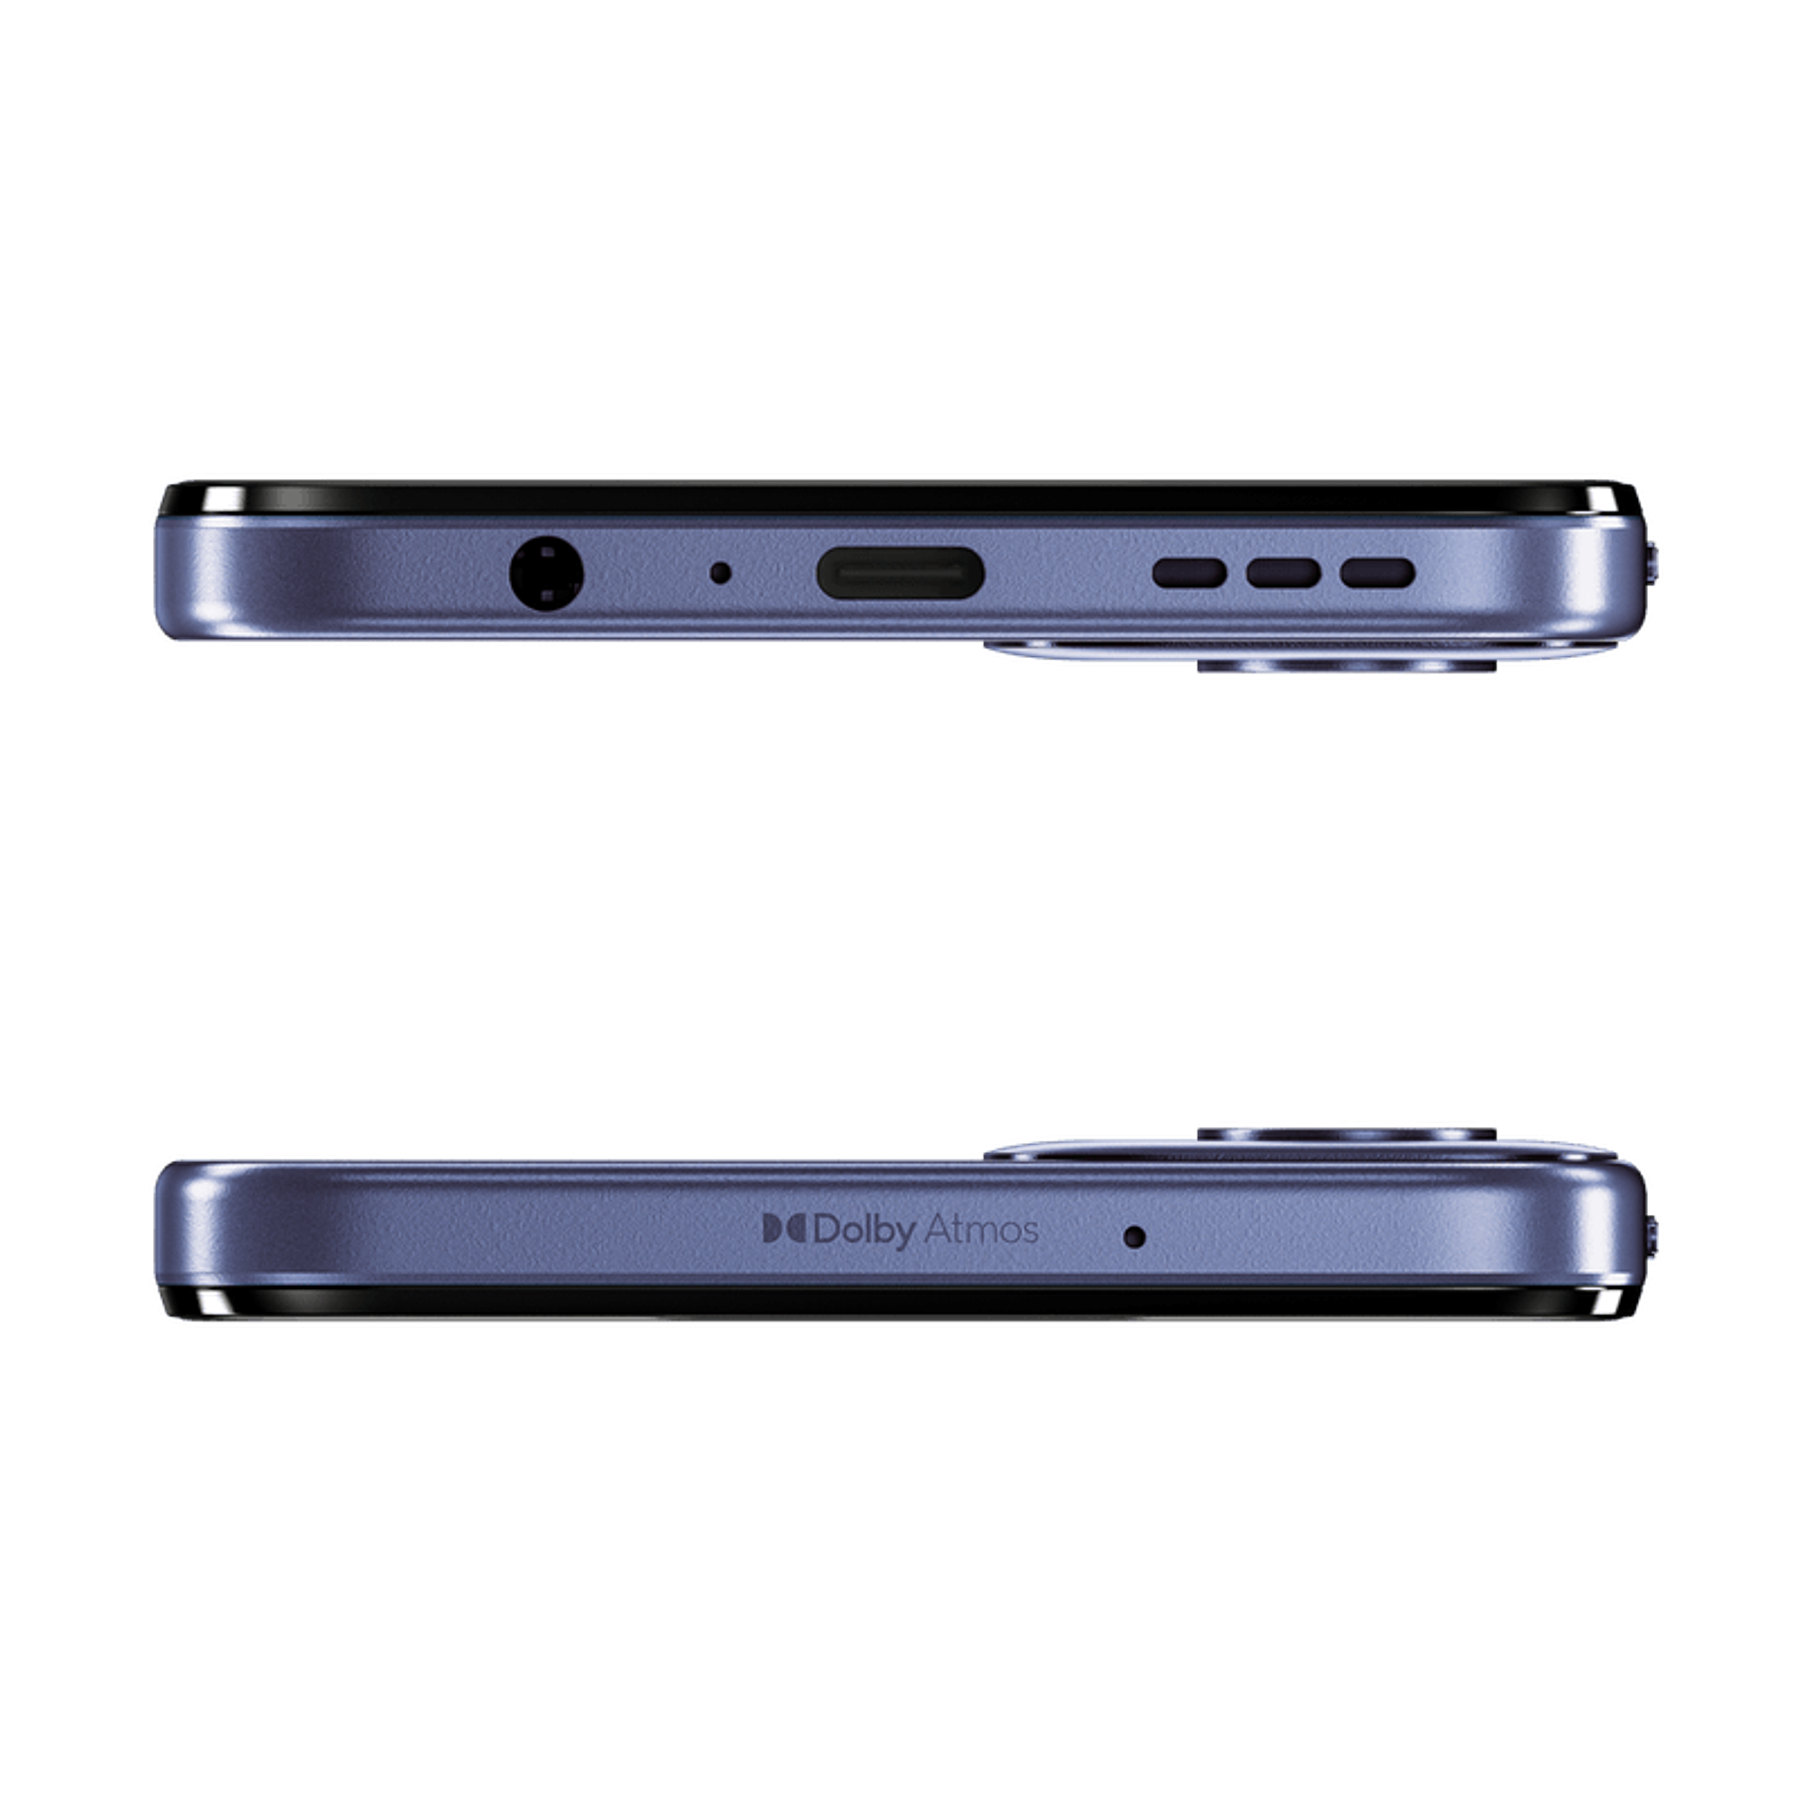 Motorola G34 8GB+256GB Celular Color Azul Artico